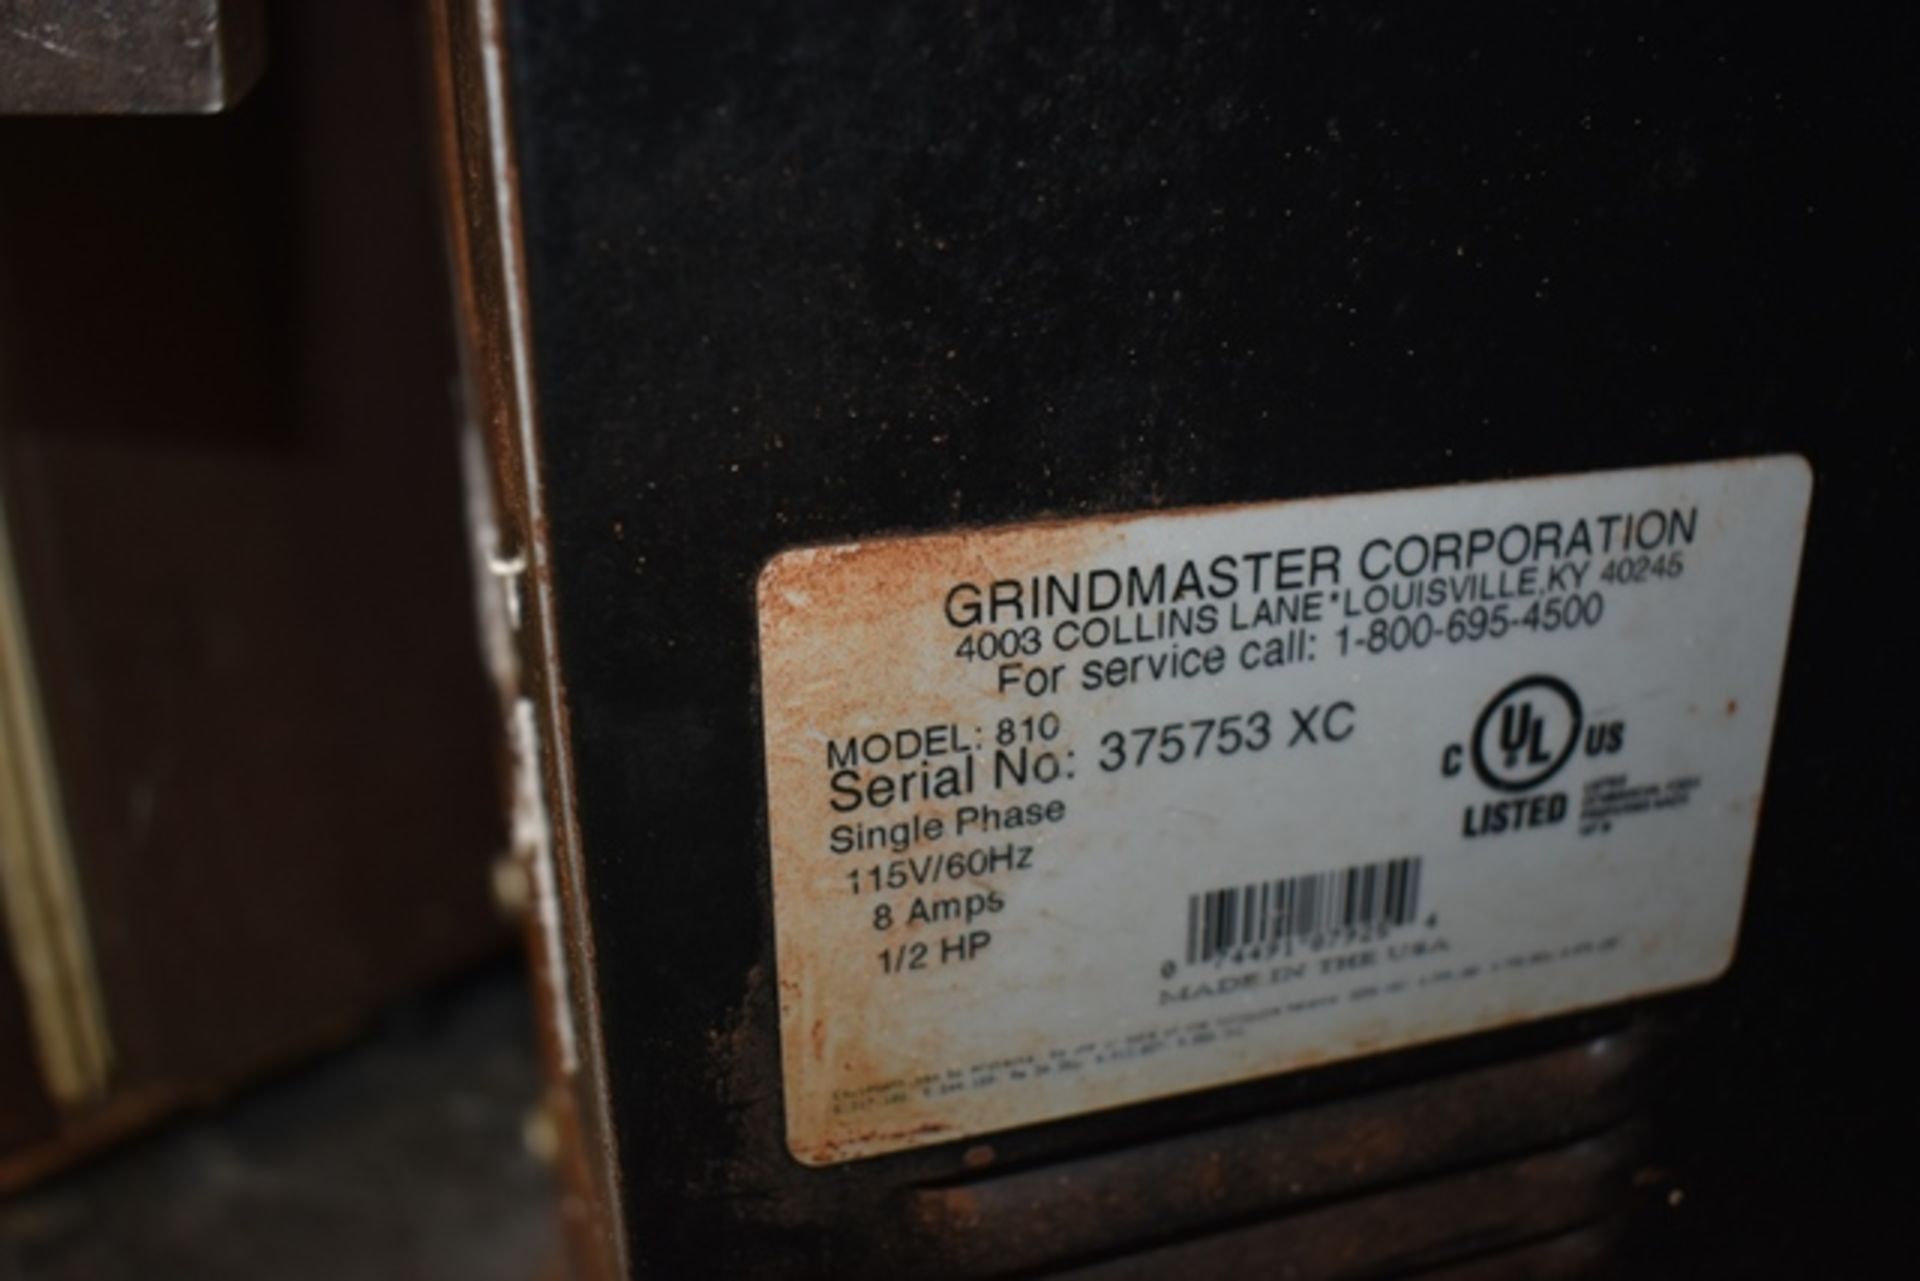 Grindmaster coffee grinder, mod. 810, s/n 375753 - Image 2 of 2